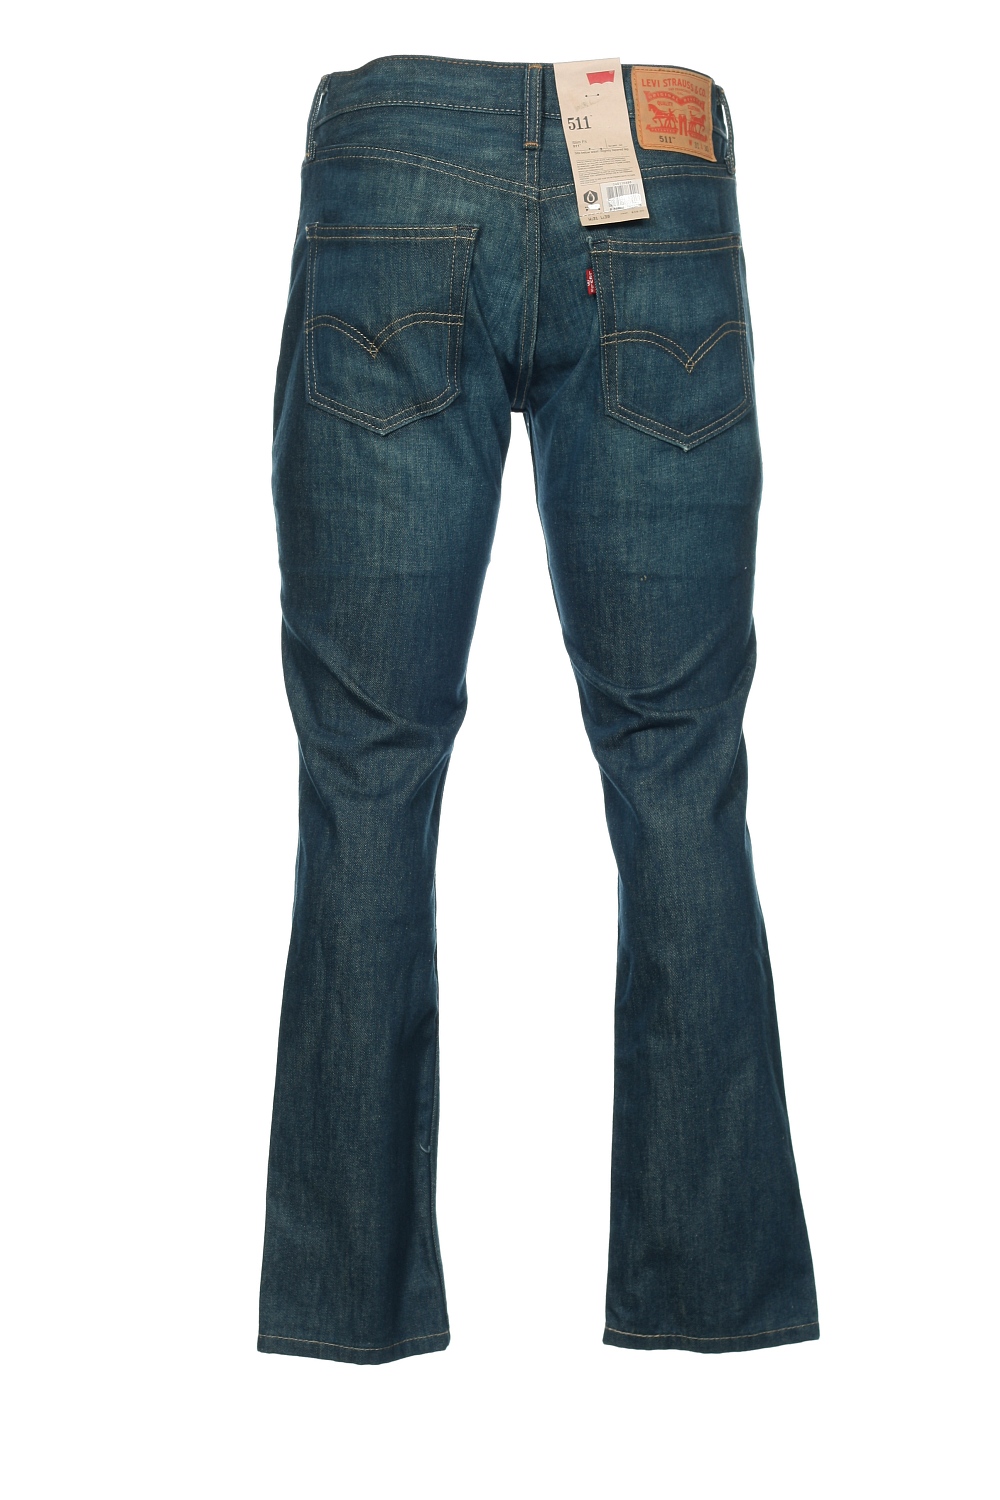 Levi's Levis Levi's 511 Men's Rigid Scraped Slim Fit Cotton Deim Jeans